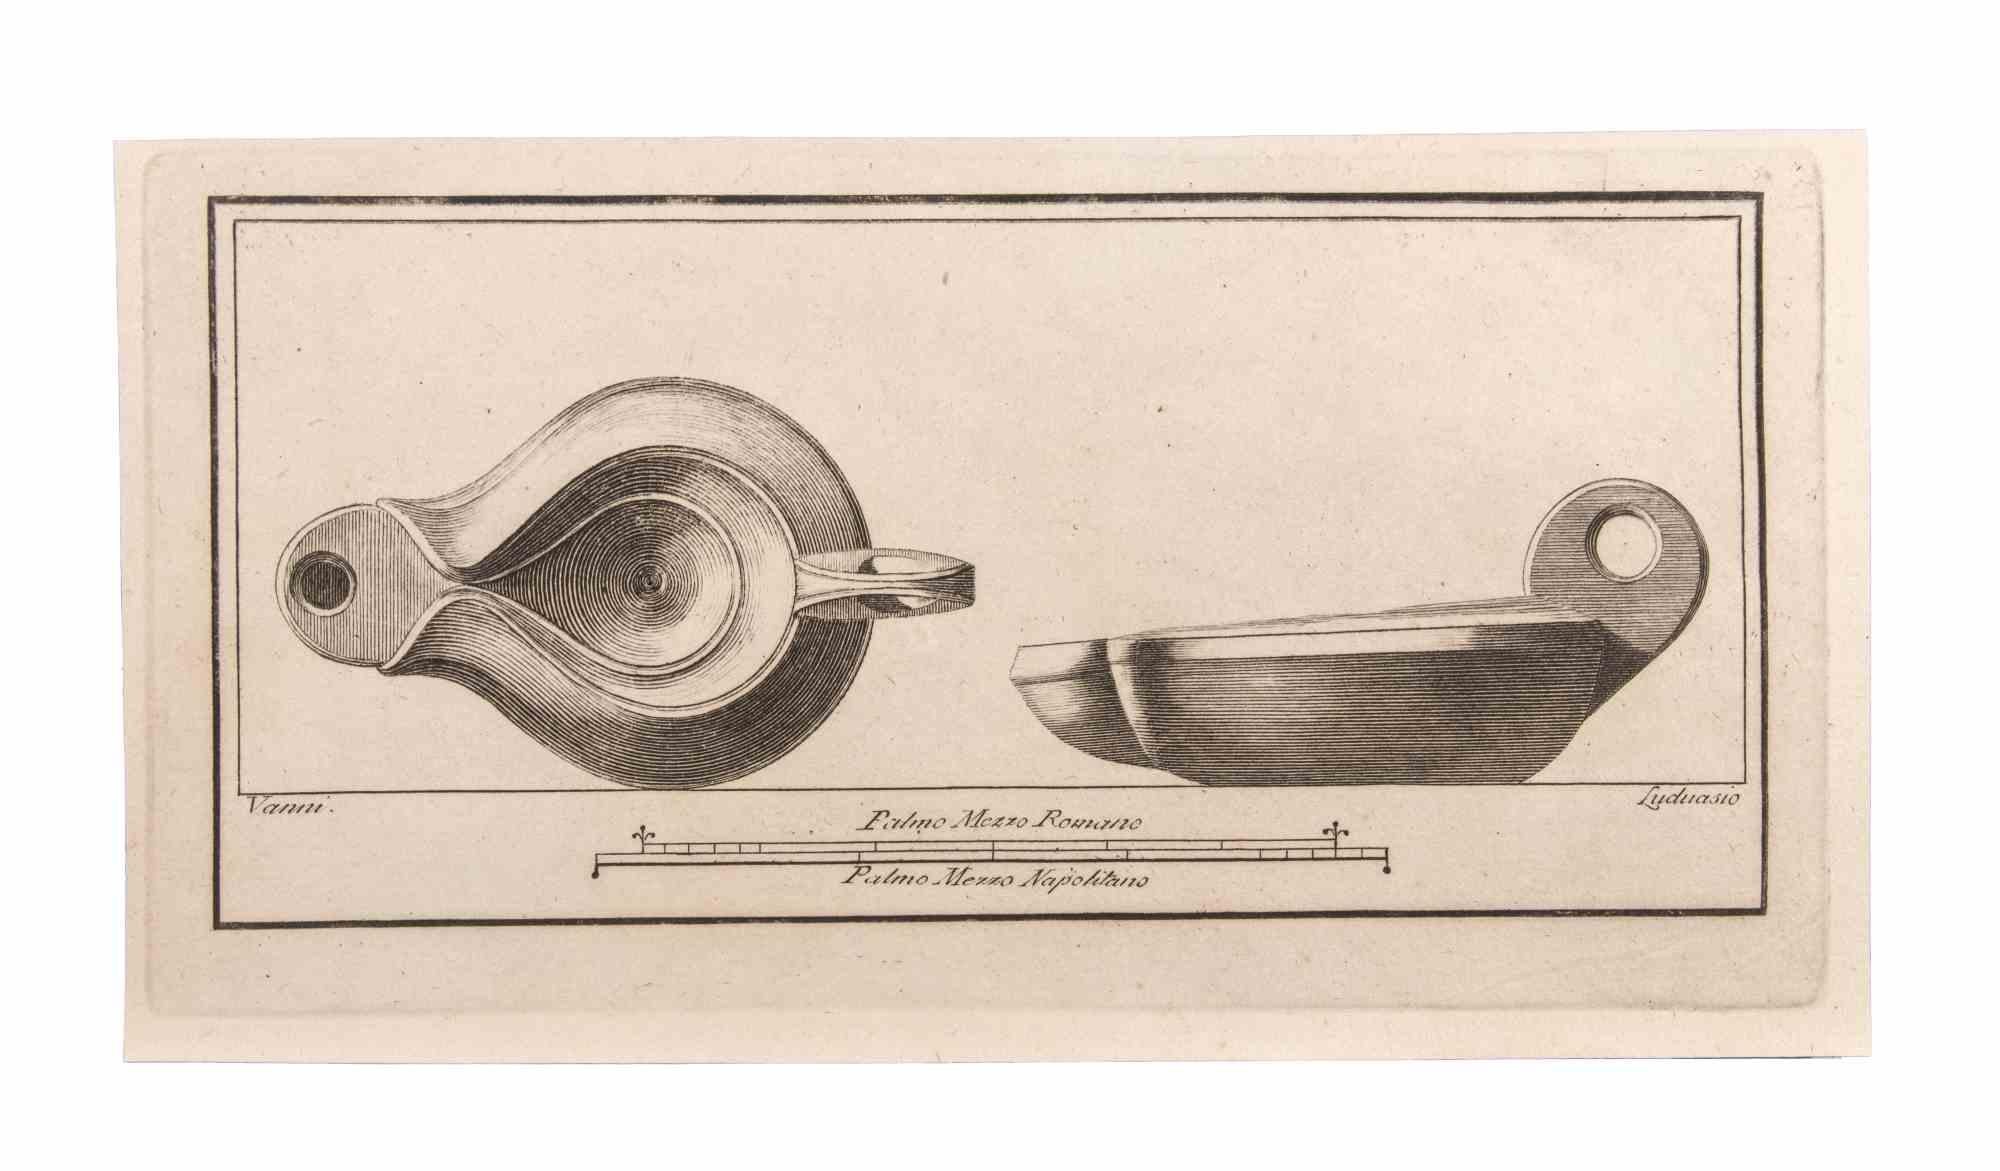 Oil Lamp est une gravure réalisée par  Niccolò Vanni (1750-1770).

La gravure appartient à la suite d'estampes "Antiquités d'Herculanum exposées" (titre original : "Le Antichità di Ercolano Esposte"), un volume de huit gravures des découvertes